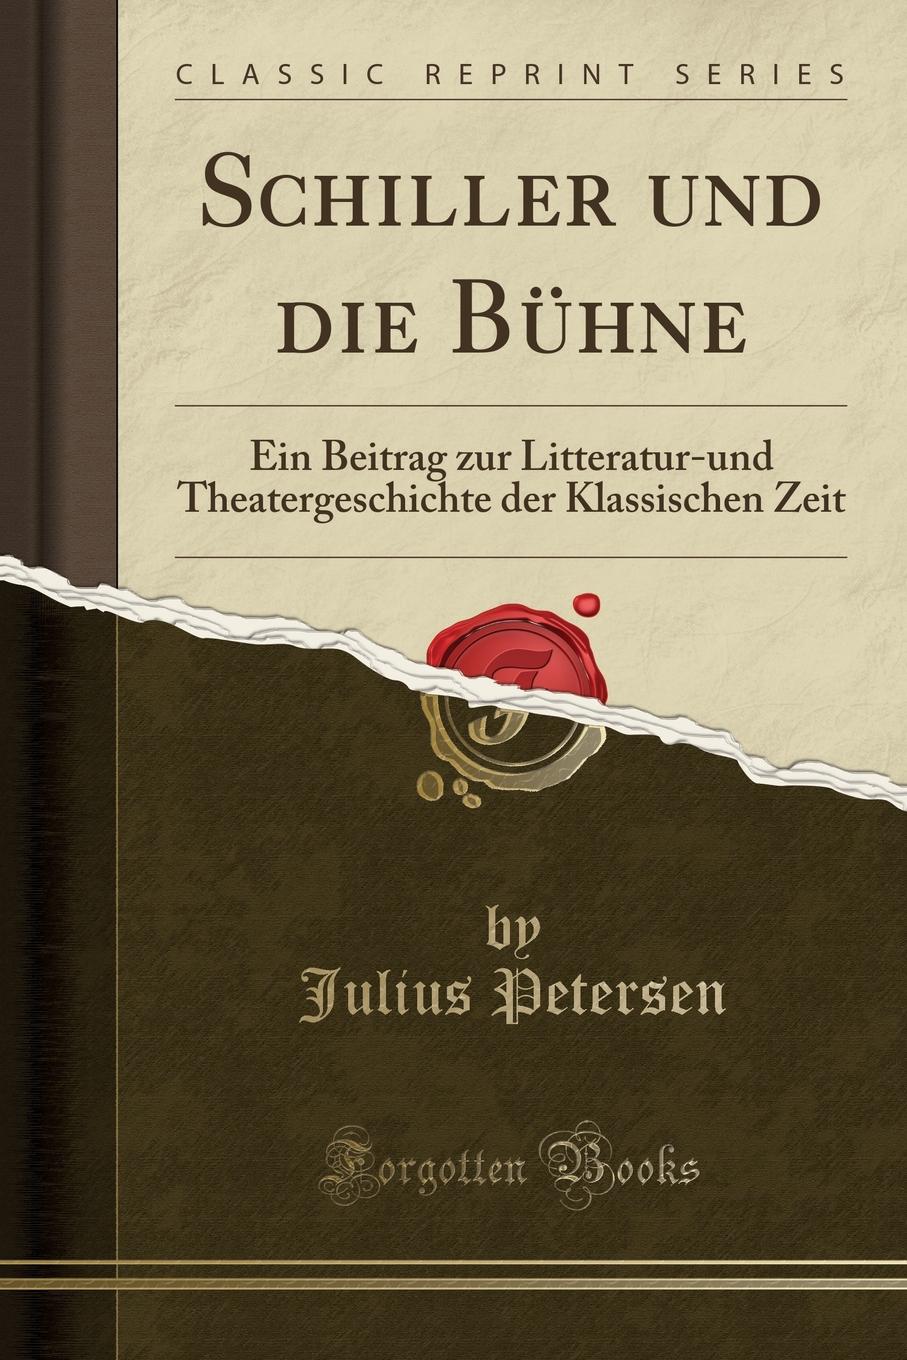 Schiller und die Buhne. Ein Beitrag zur Litteratur-und Theatergeschichte der Klassischen Zeit (Classic Reprint)